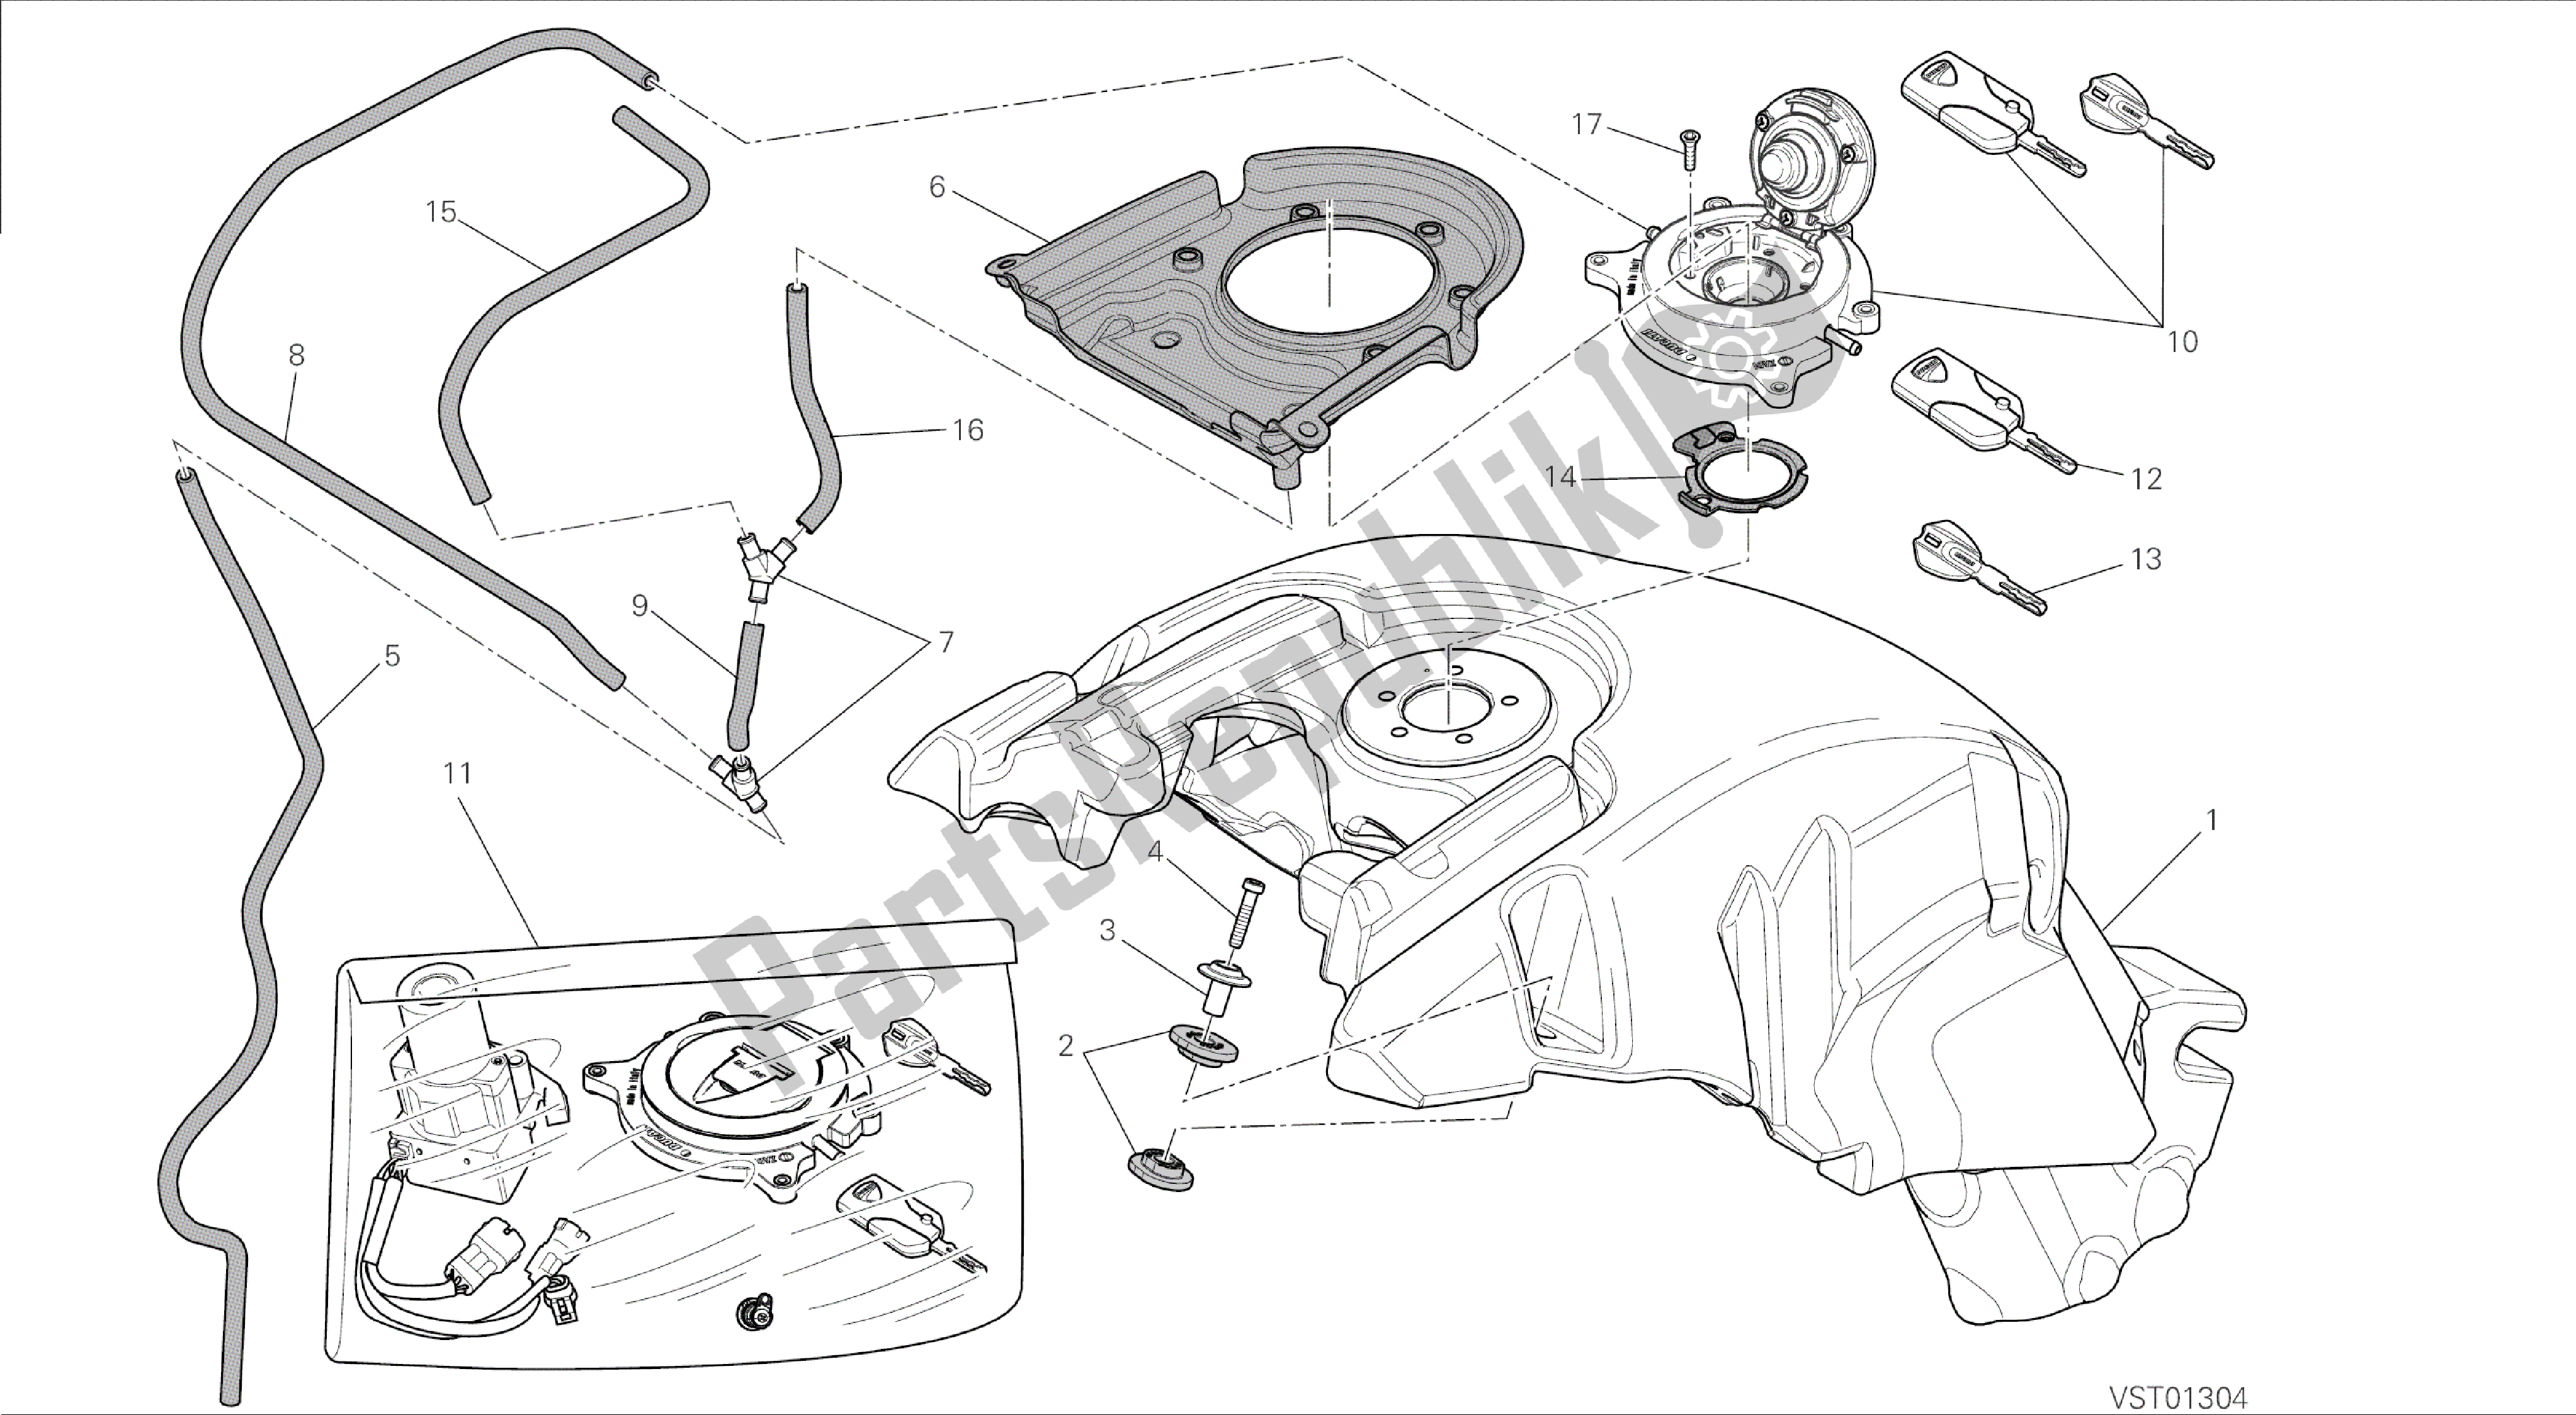 Todas las partes para Dibujo 032 - Tanque De Combustible [mod: Dvl; Xst: Marco De Grupo Aus, Eur, Fra, Jap] de Ducati Diavel 1200 2015